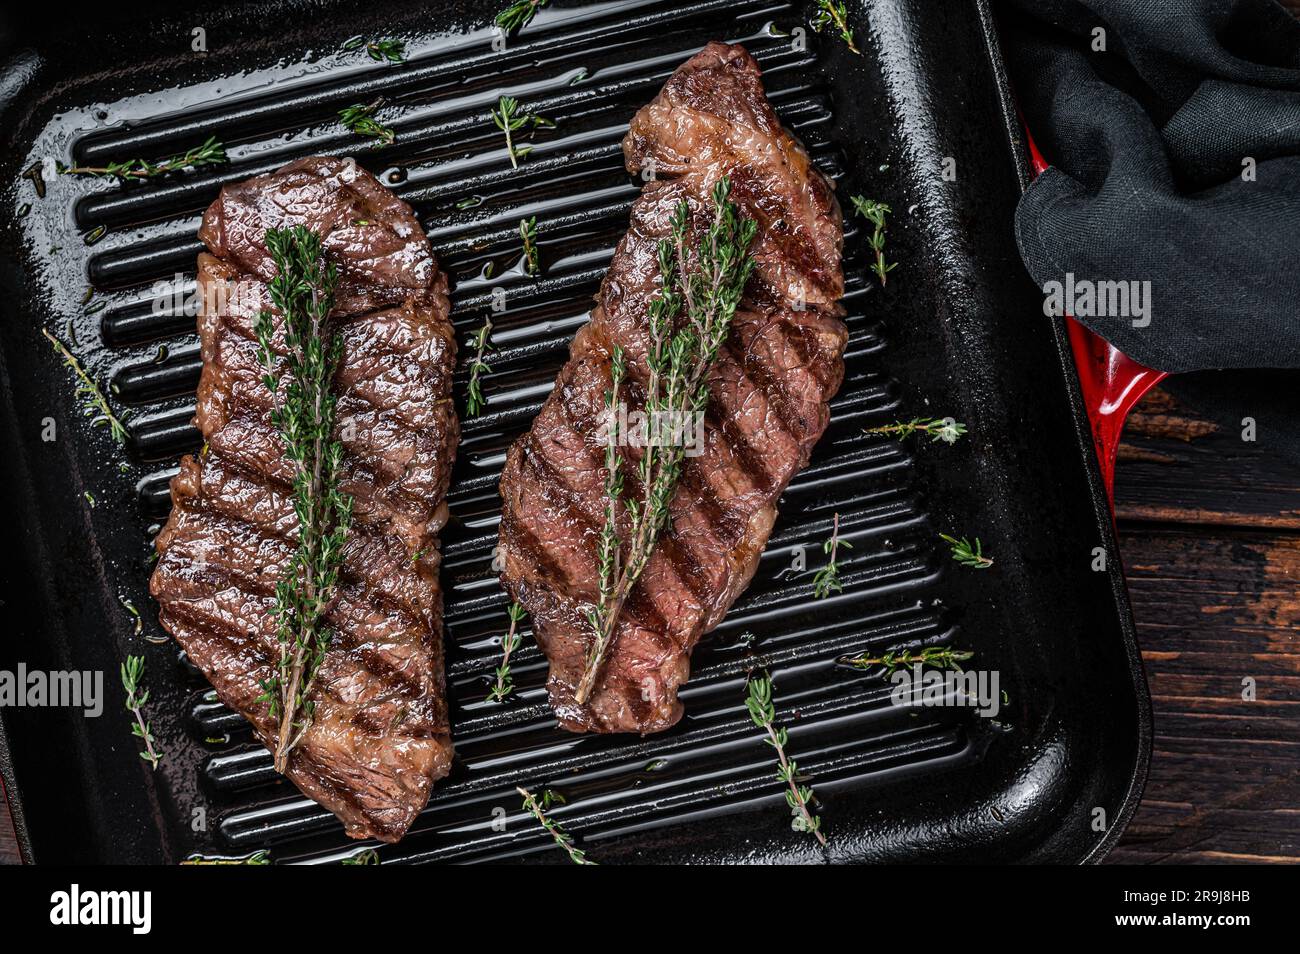 Steak de viande de bœuf de denver frits au thym dans une poêle à frire. Arrière-plan en bois. Vue de dessus. Banque D'Images